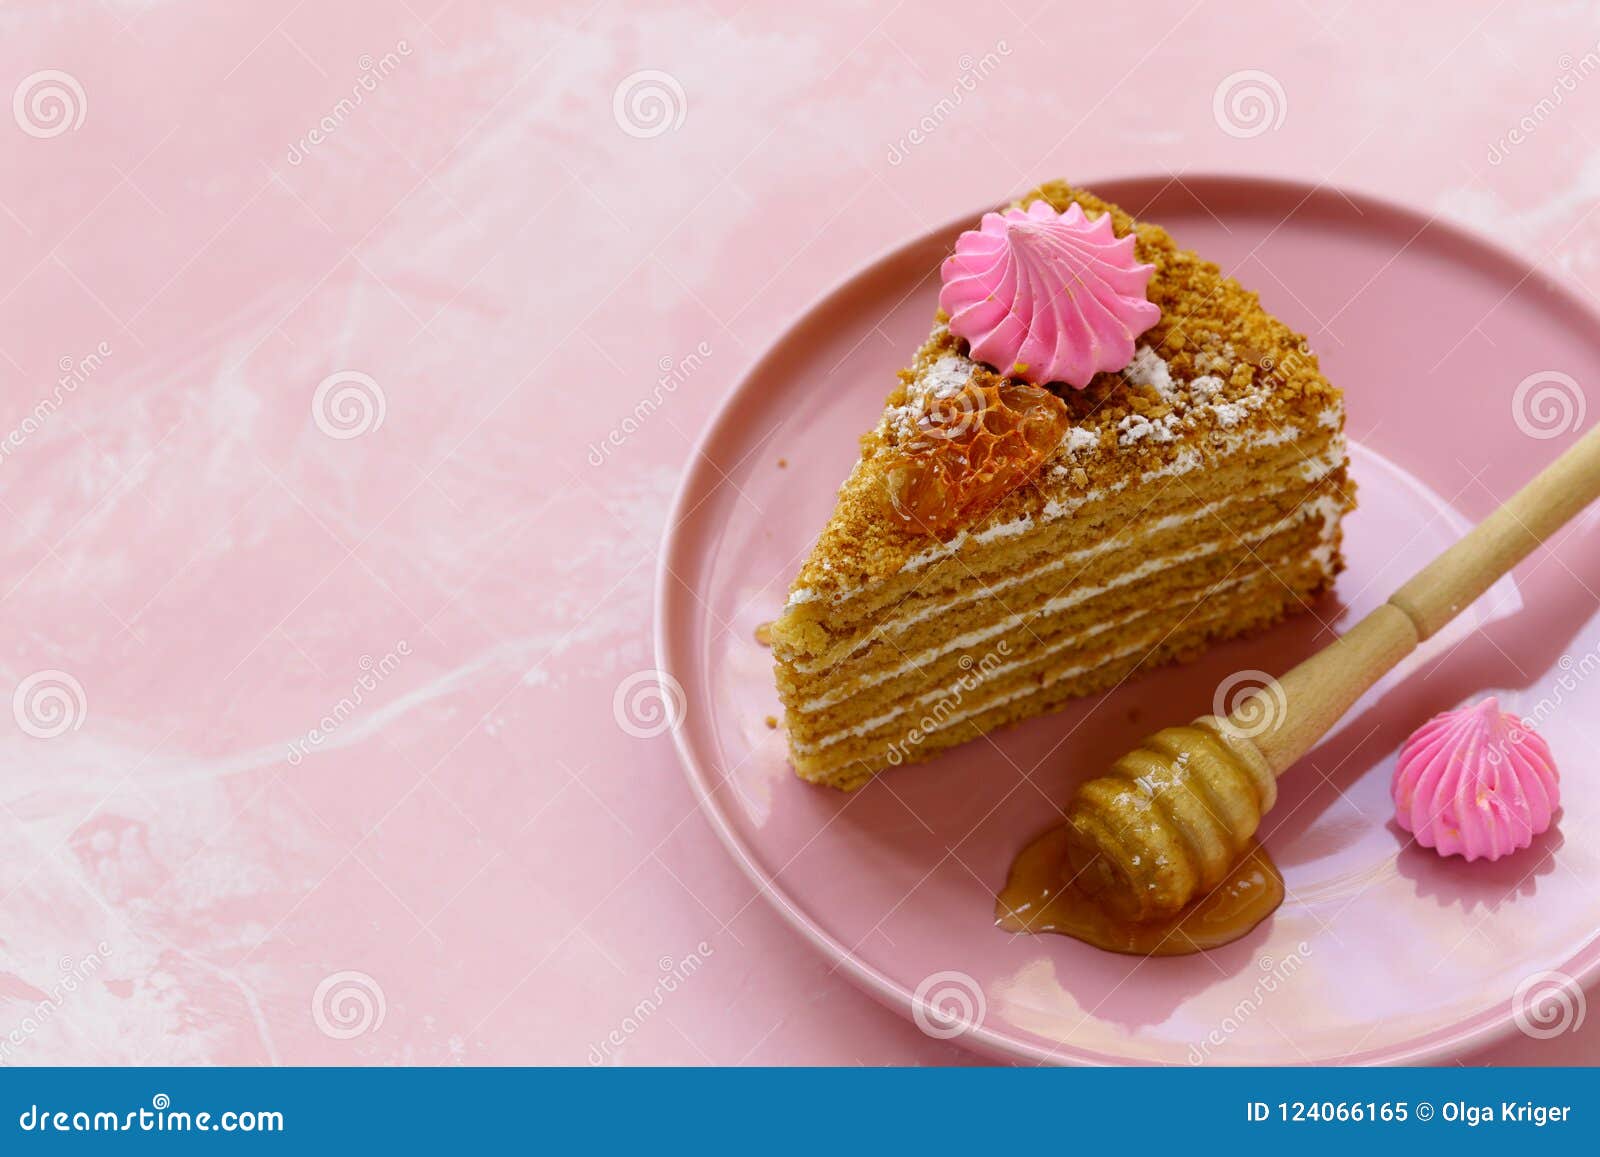 Honey cake stock image. Image of traditional, caramel - 124066165